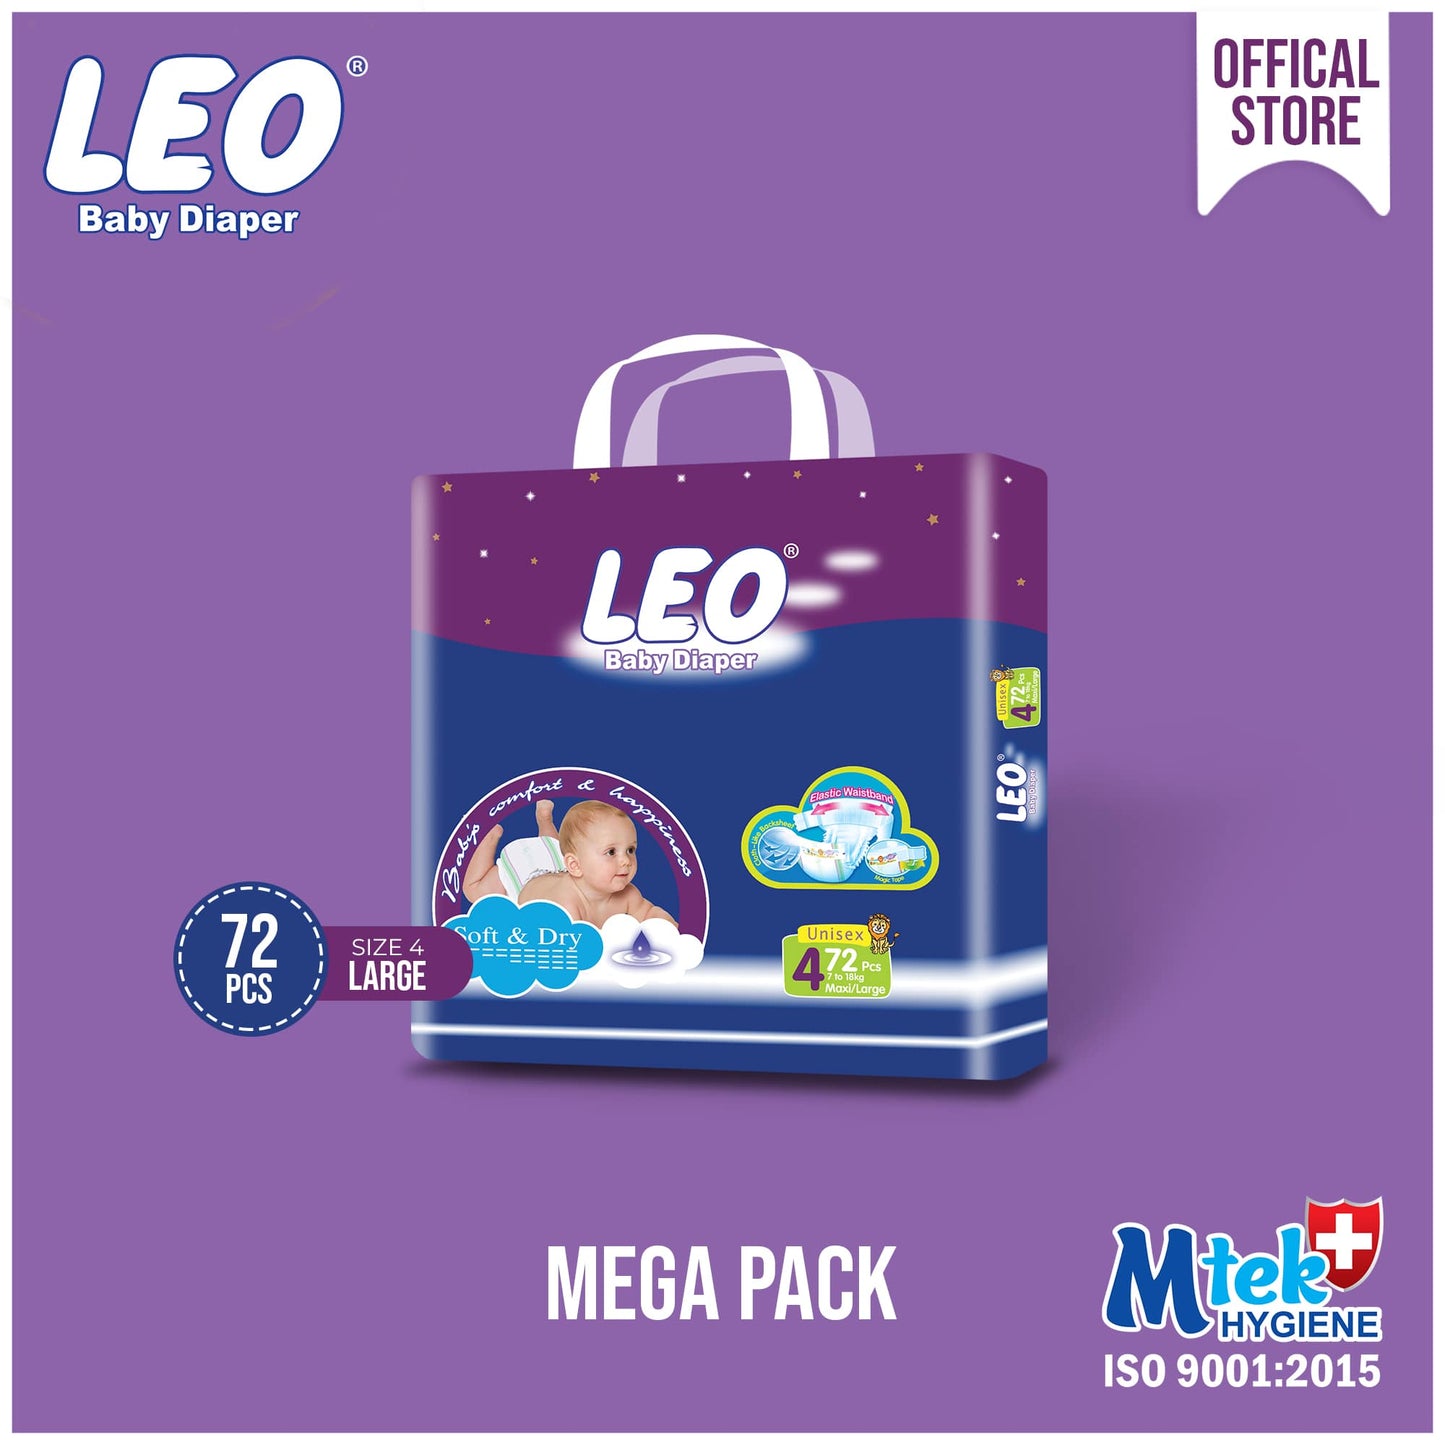 Leo Mega Pack Baby Diaper – Size 4, Large – 72 Pcs